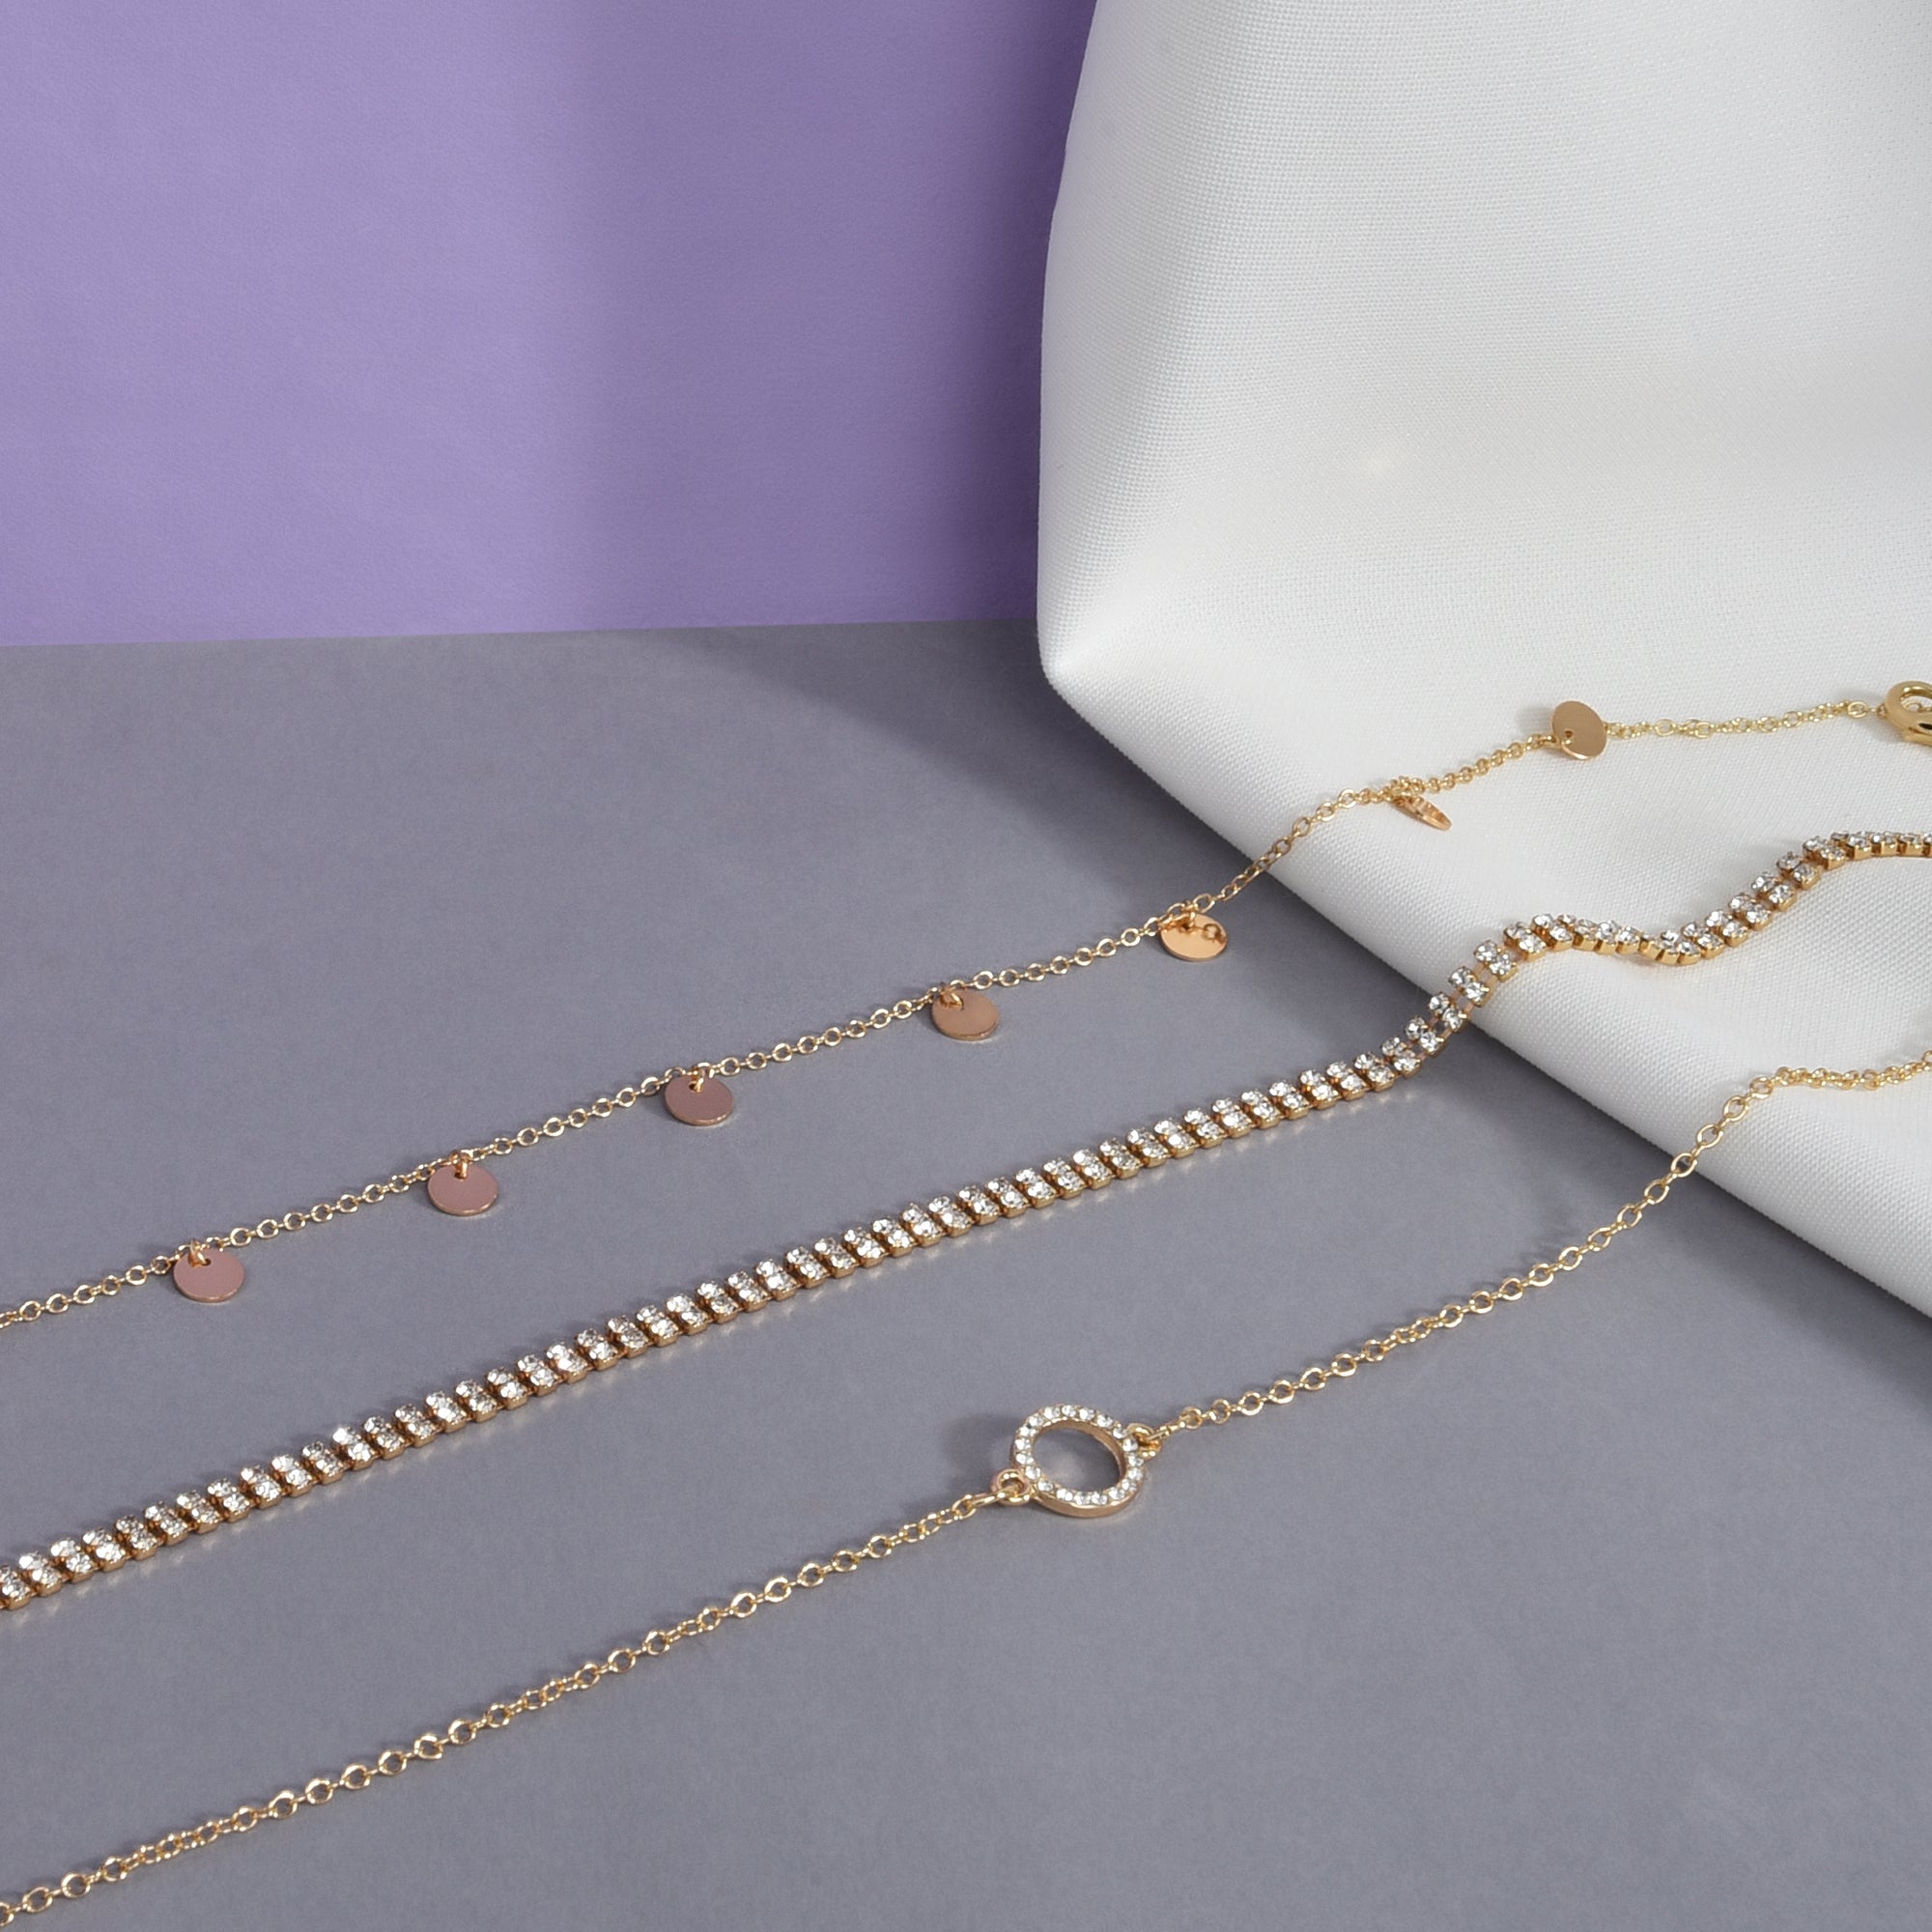 Vintage Velvet Black Choker Love Heart Pendant Necklace For Women Girls  Gifts ^~ | eBay